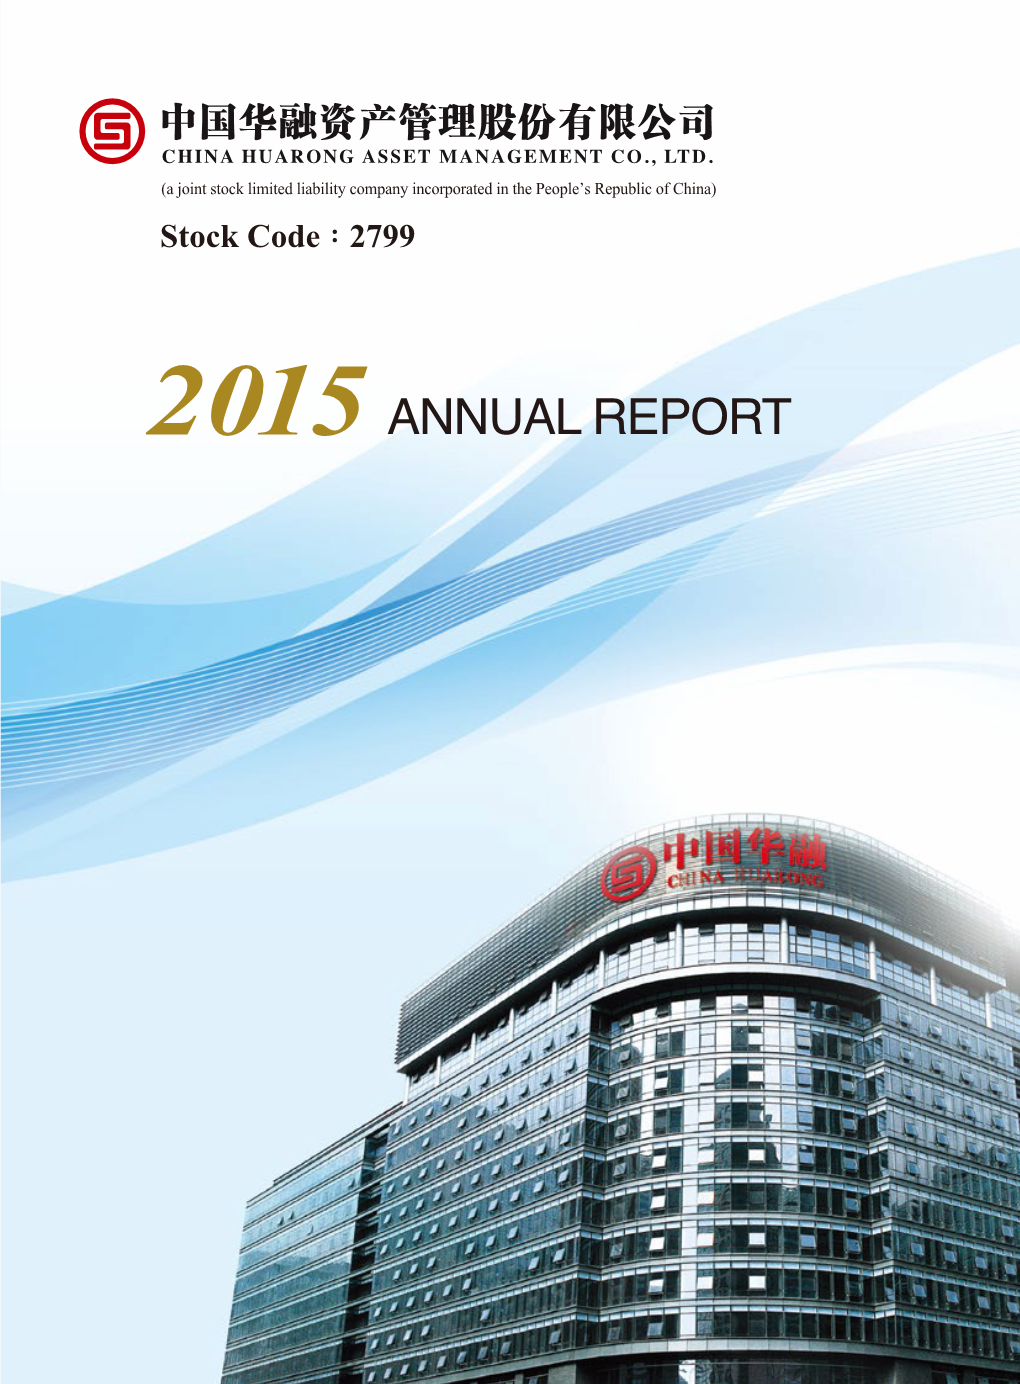 2015 Annual Report Address: No